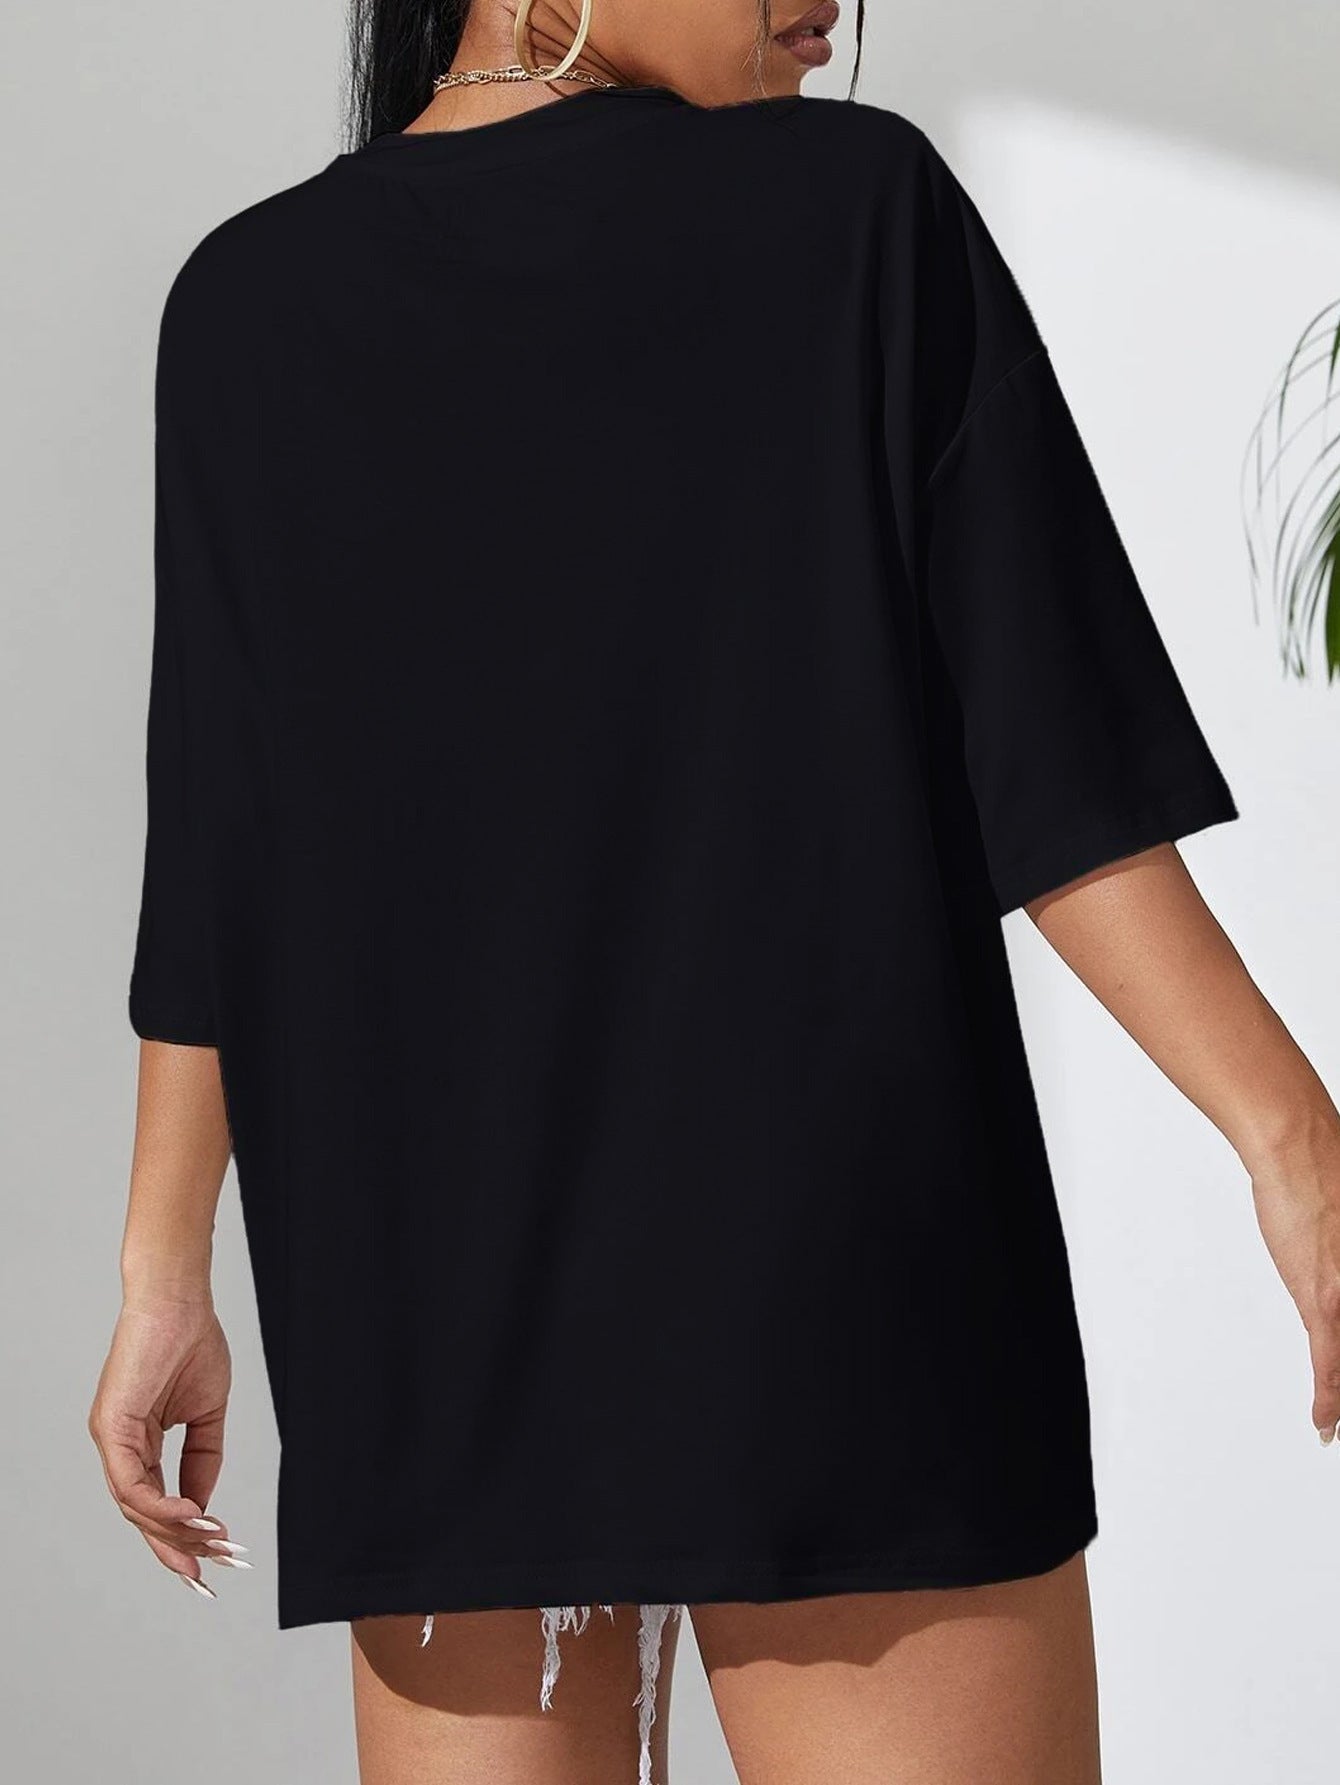 T-shirt nera casual semplice girocollo manica corta donna stampa farfalla allentata